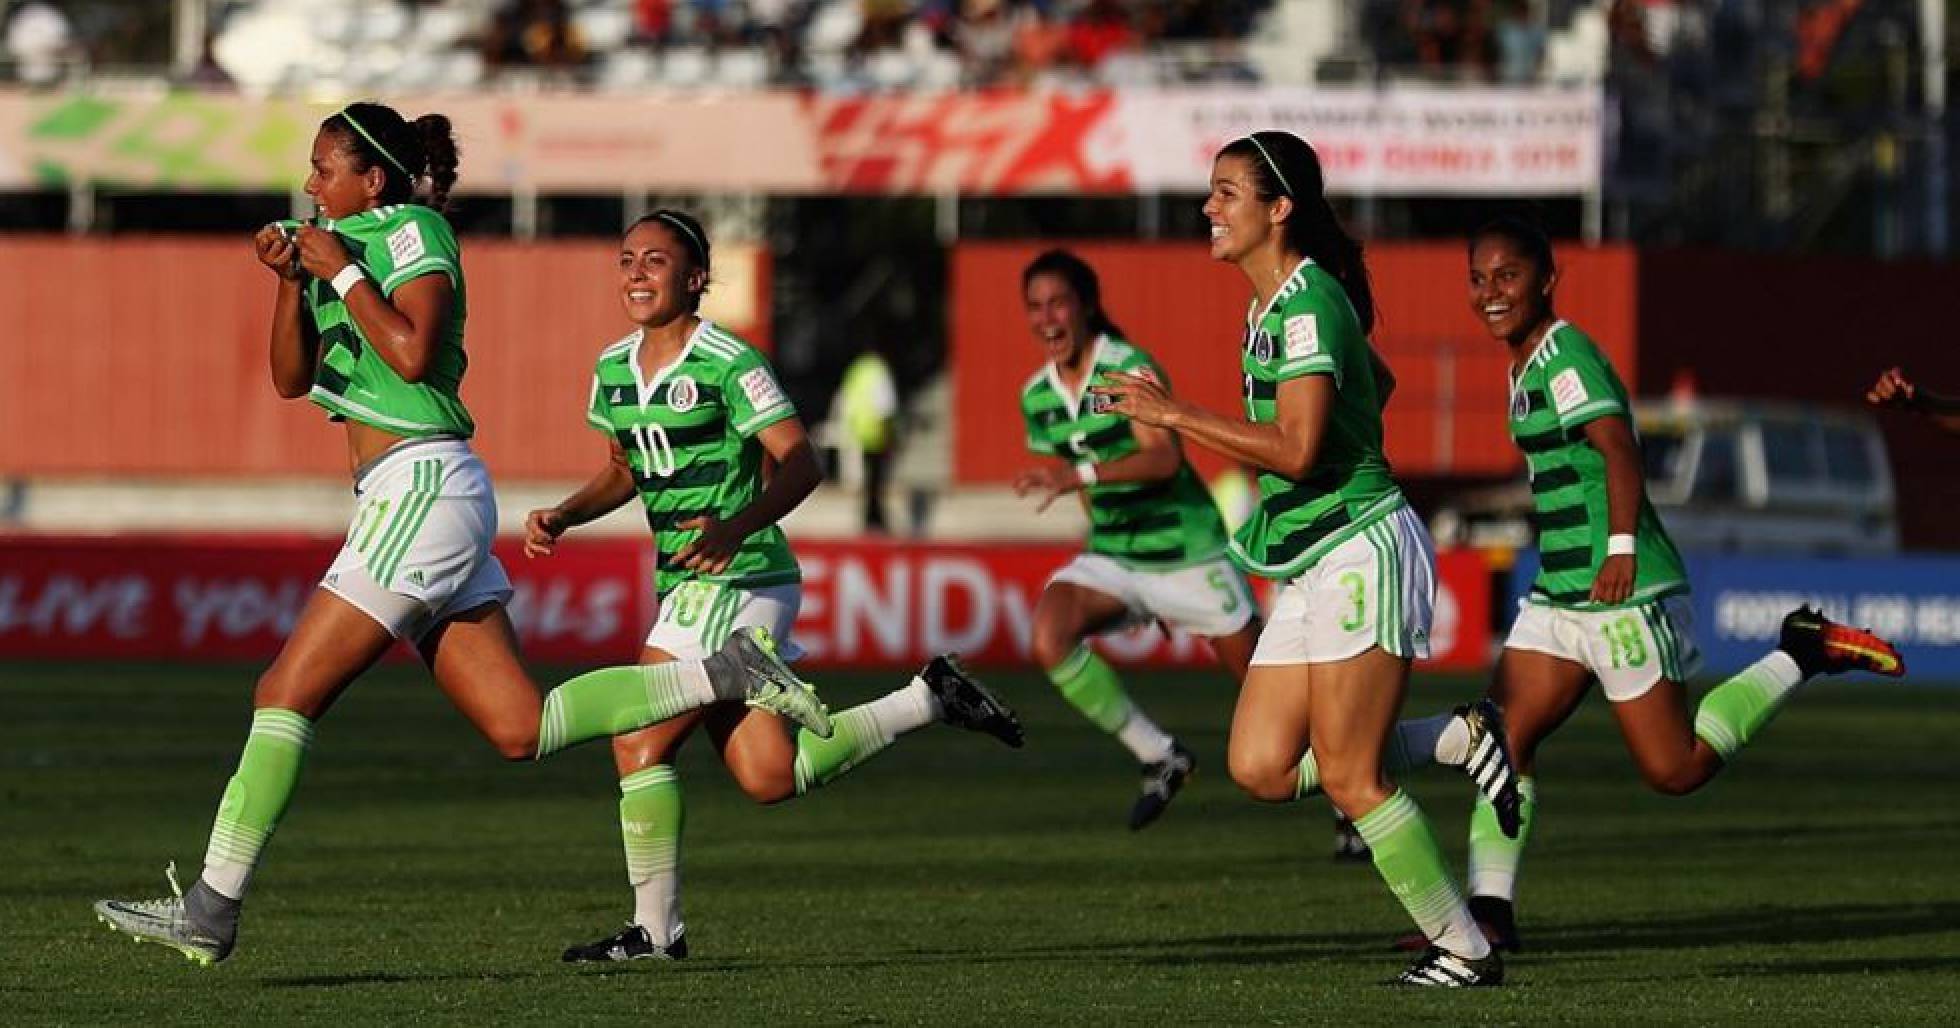  México crea su primera liga femenina de fútbol